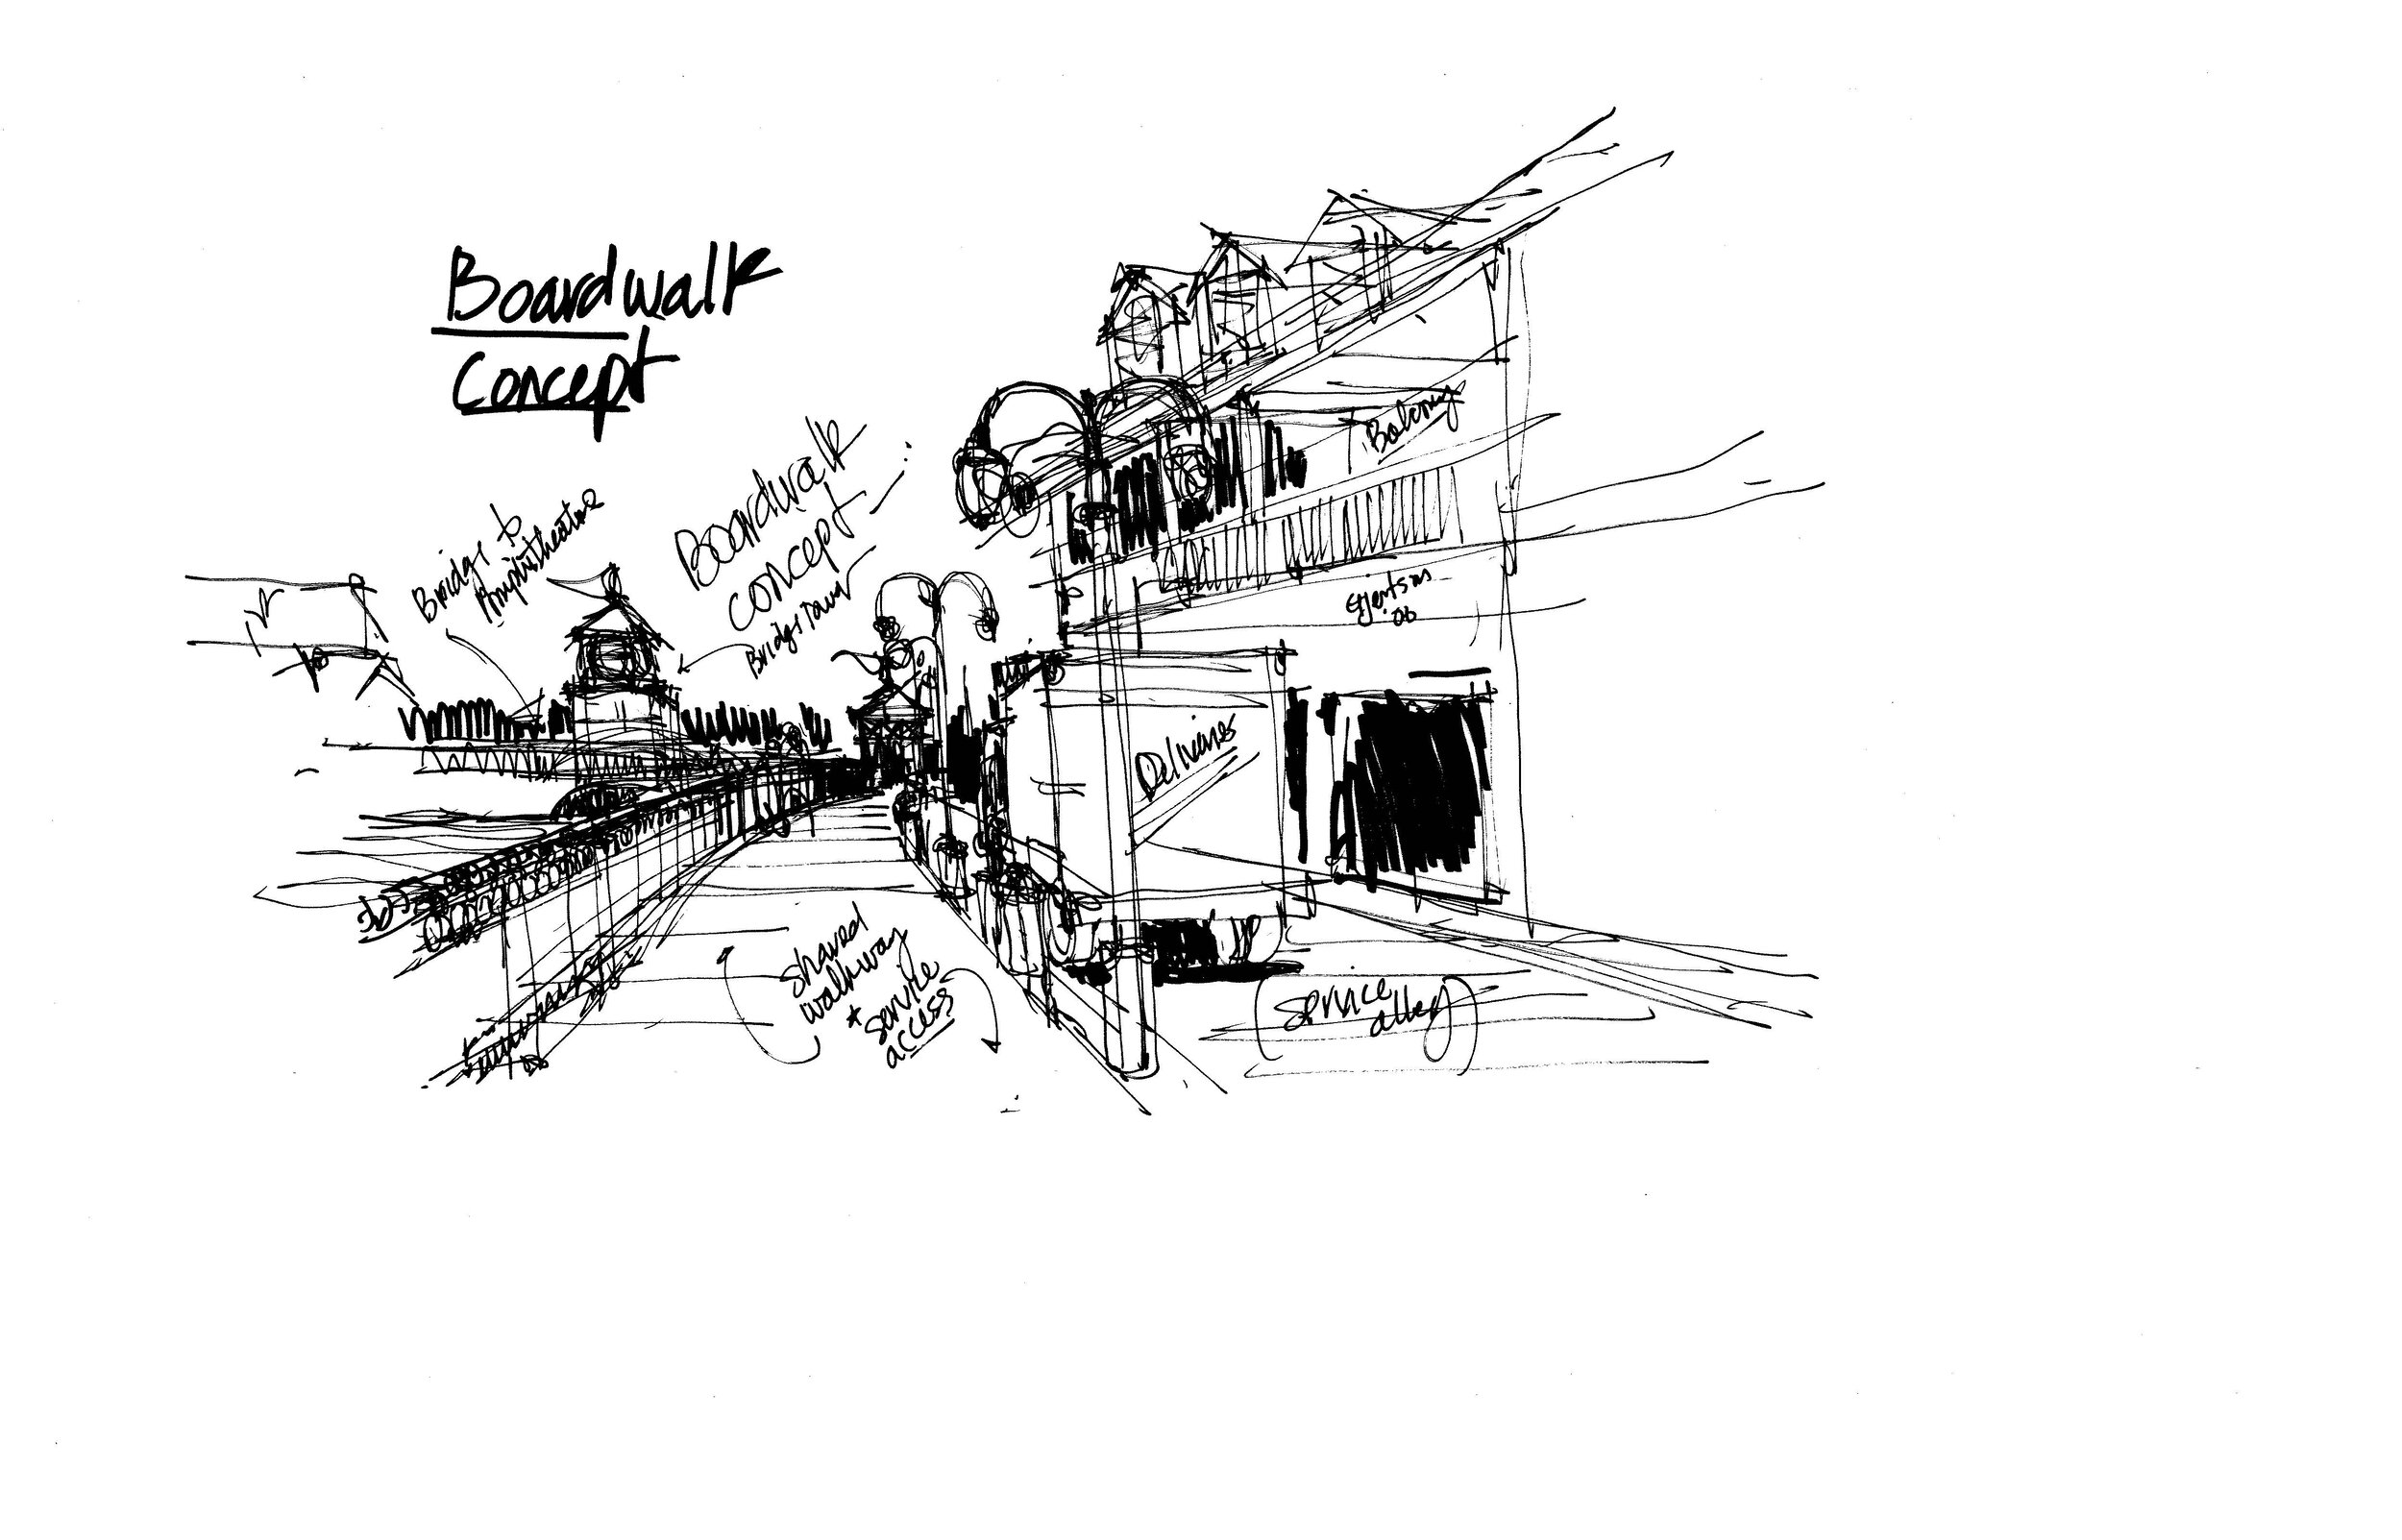 murdock boardwalk concept sketch 2-14-06.jpg